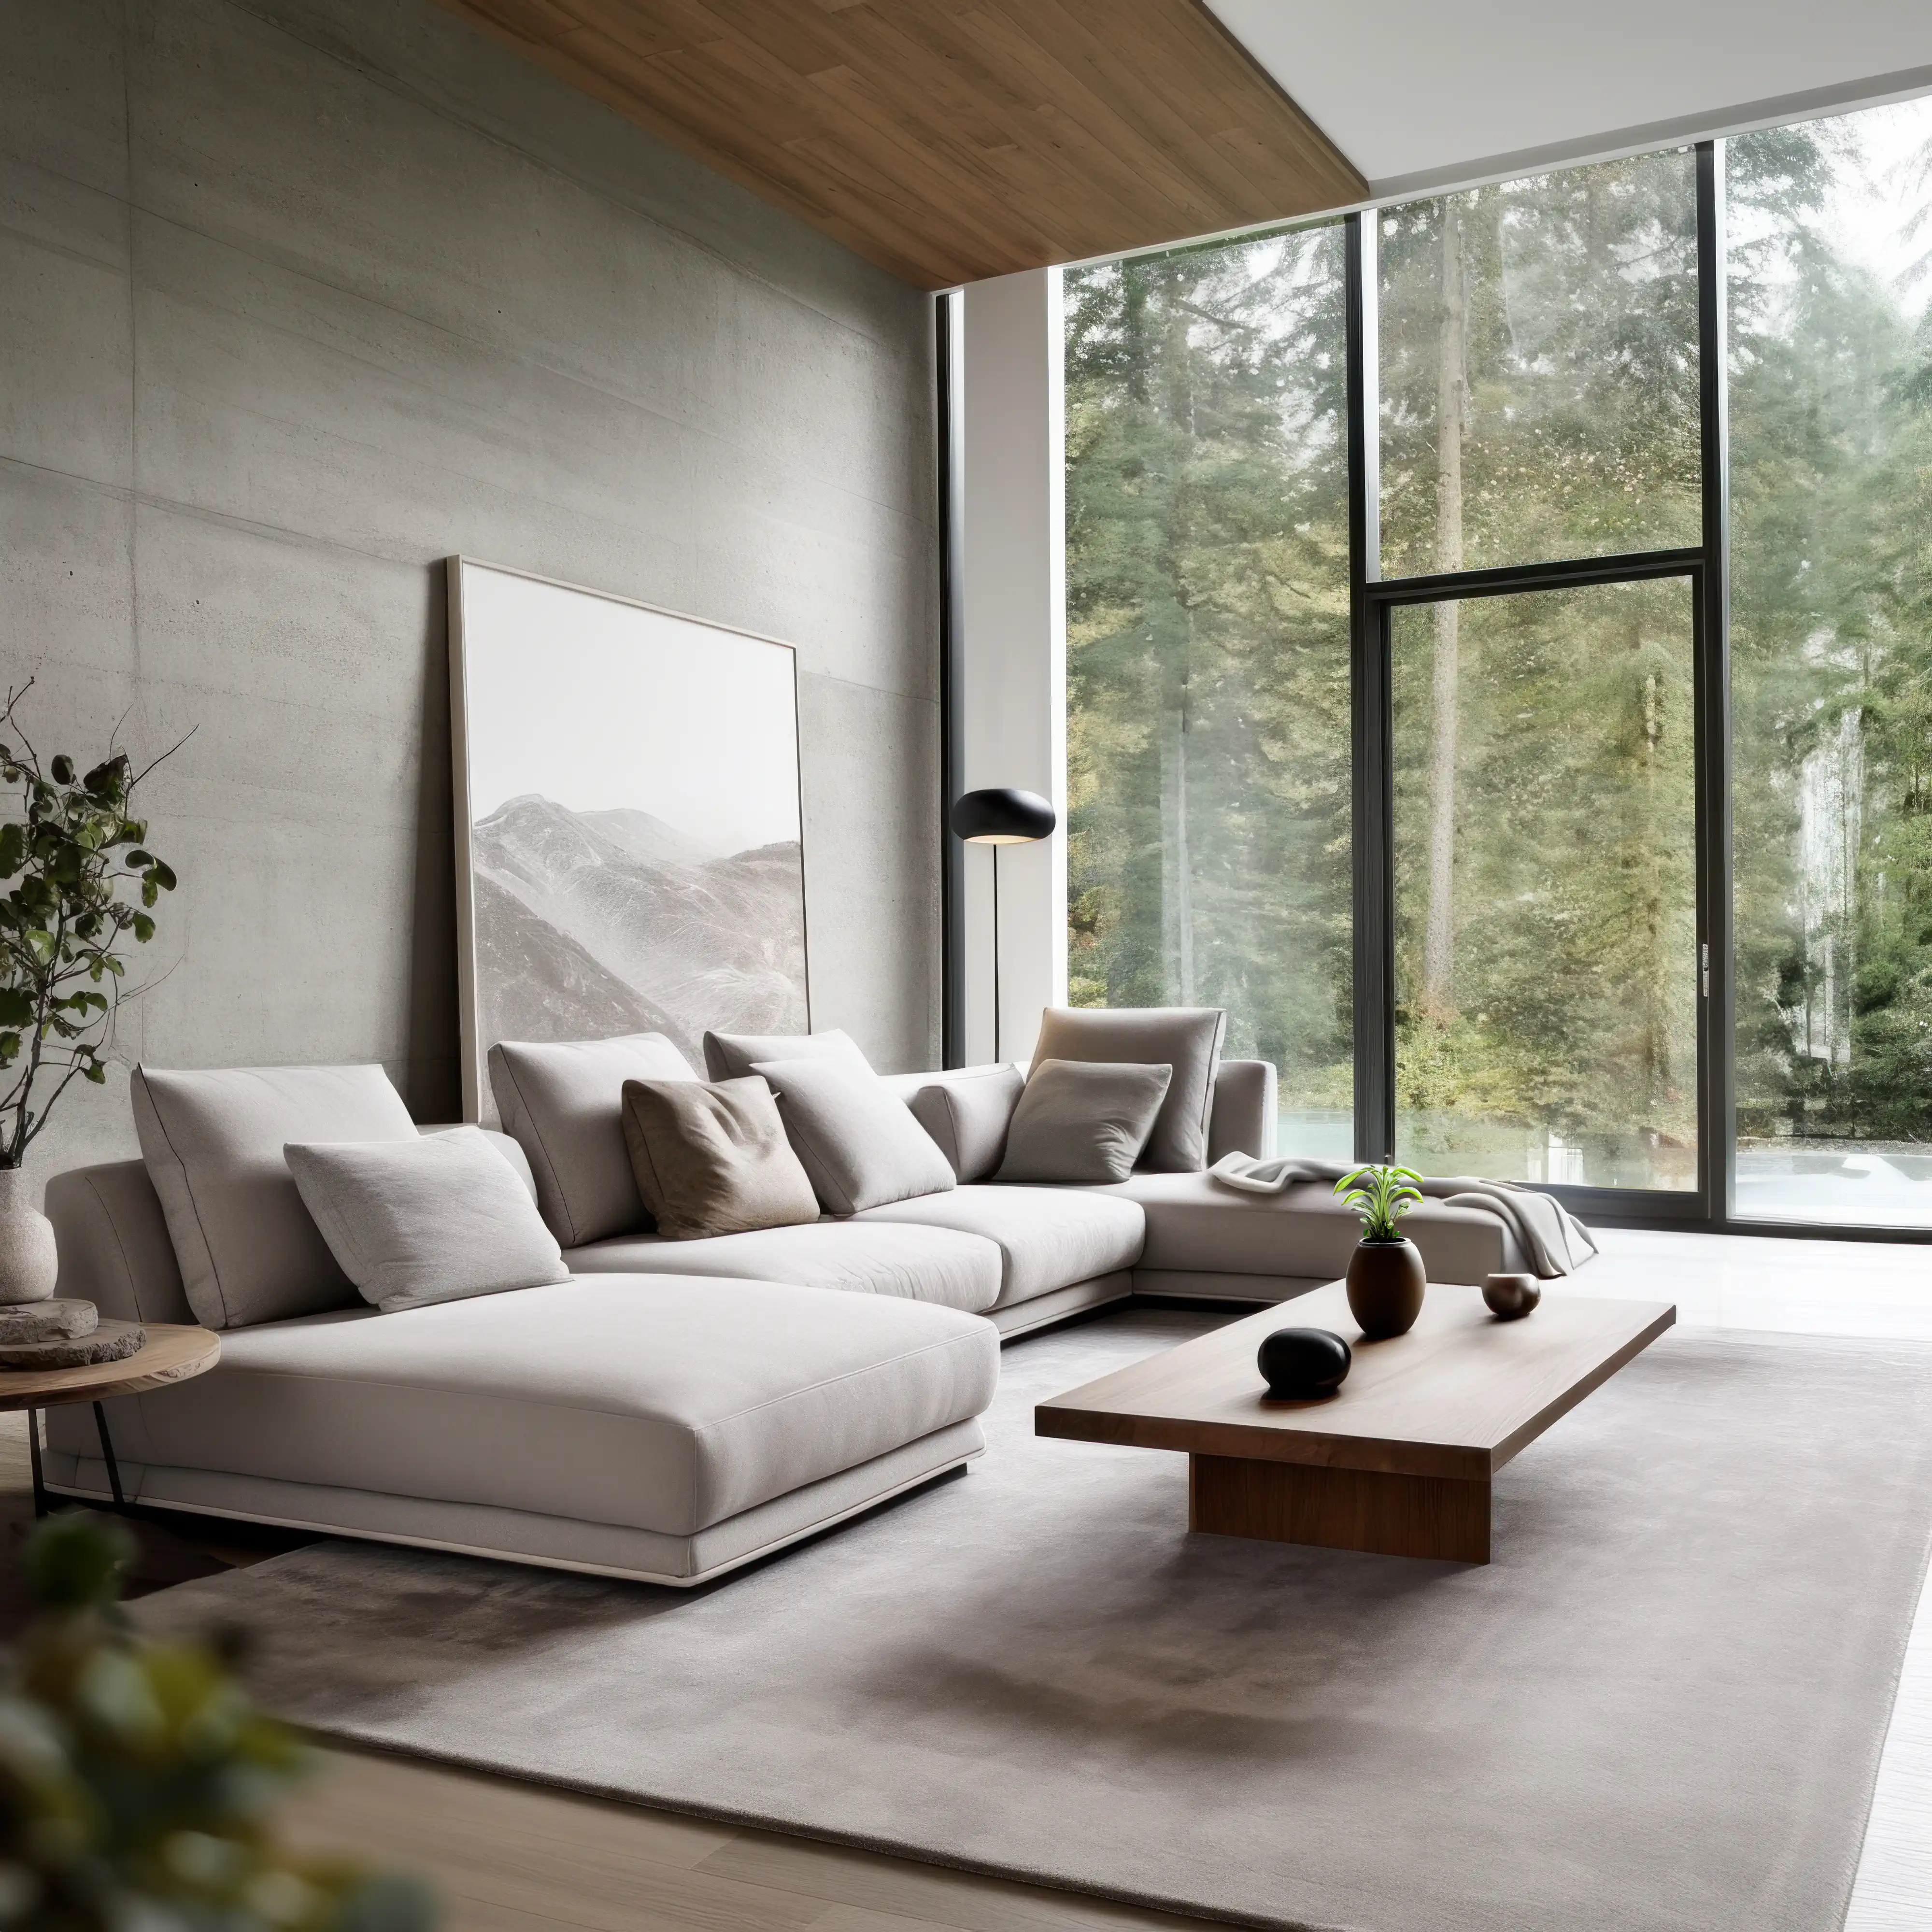 Salon moderne avec de grandes fenêtres donnant sur une forêt, avec un canapé contemporain et une table basse en bois, intérieur signé Sarah Brown Design